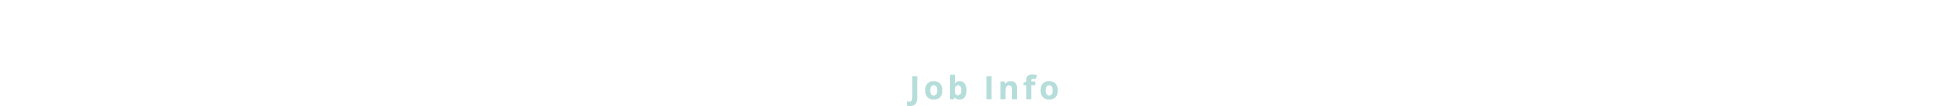 お仕事詳細 / Job Info